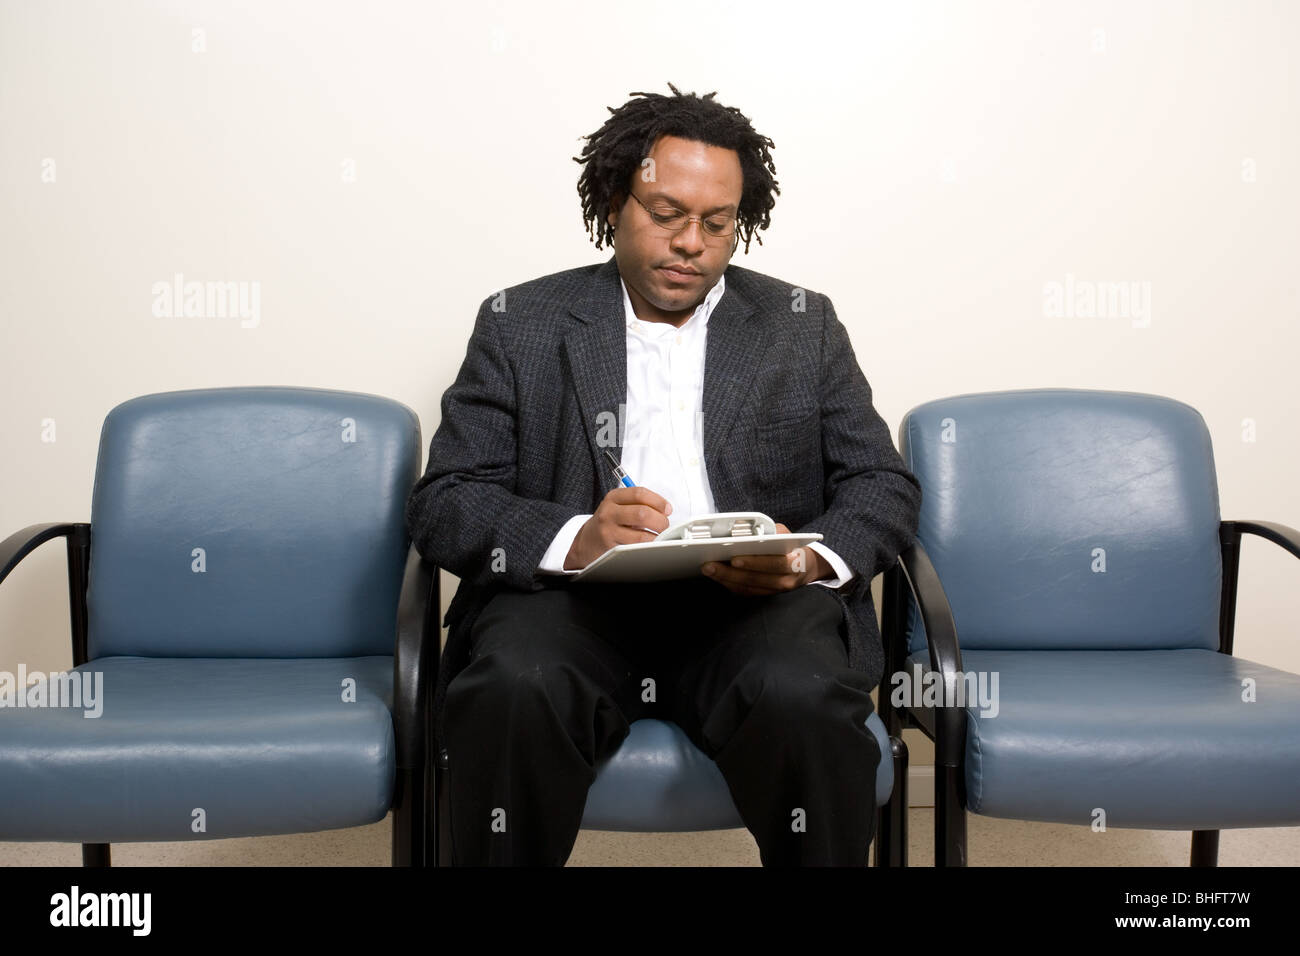 Schwarzer Mann Antworten Anamnese Fragebogen während des Wartens auf seinen Arzt oder Physiotherapeuten oder des Psychologen Termin Stockfoto